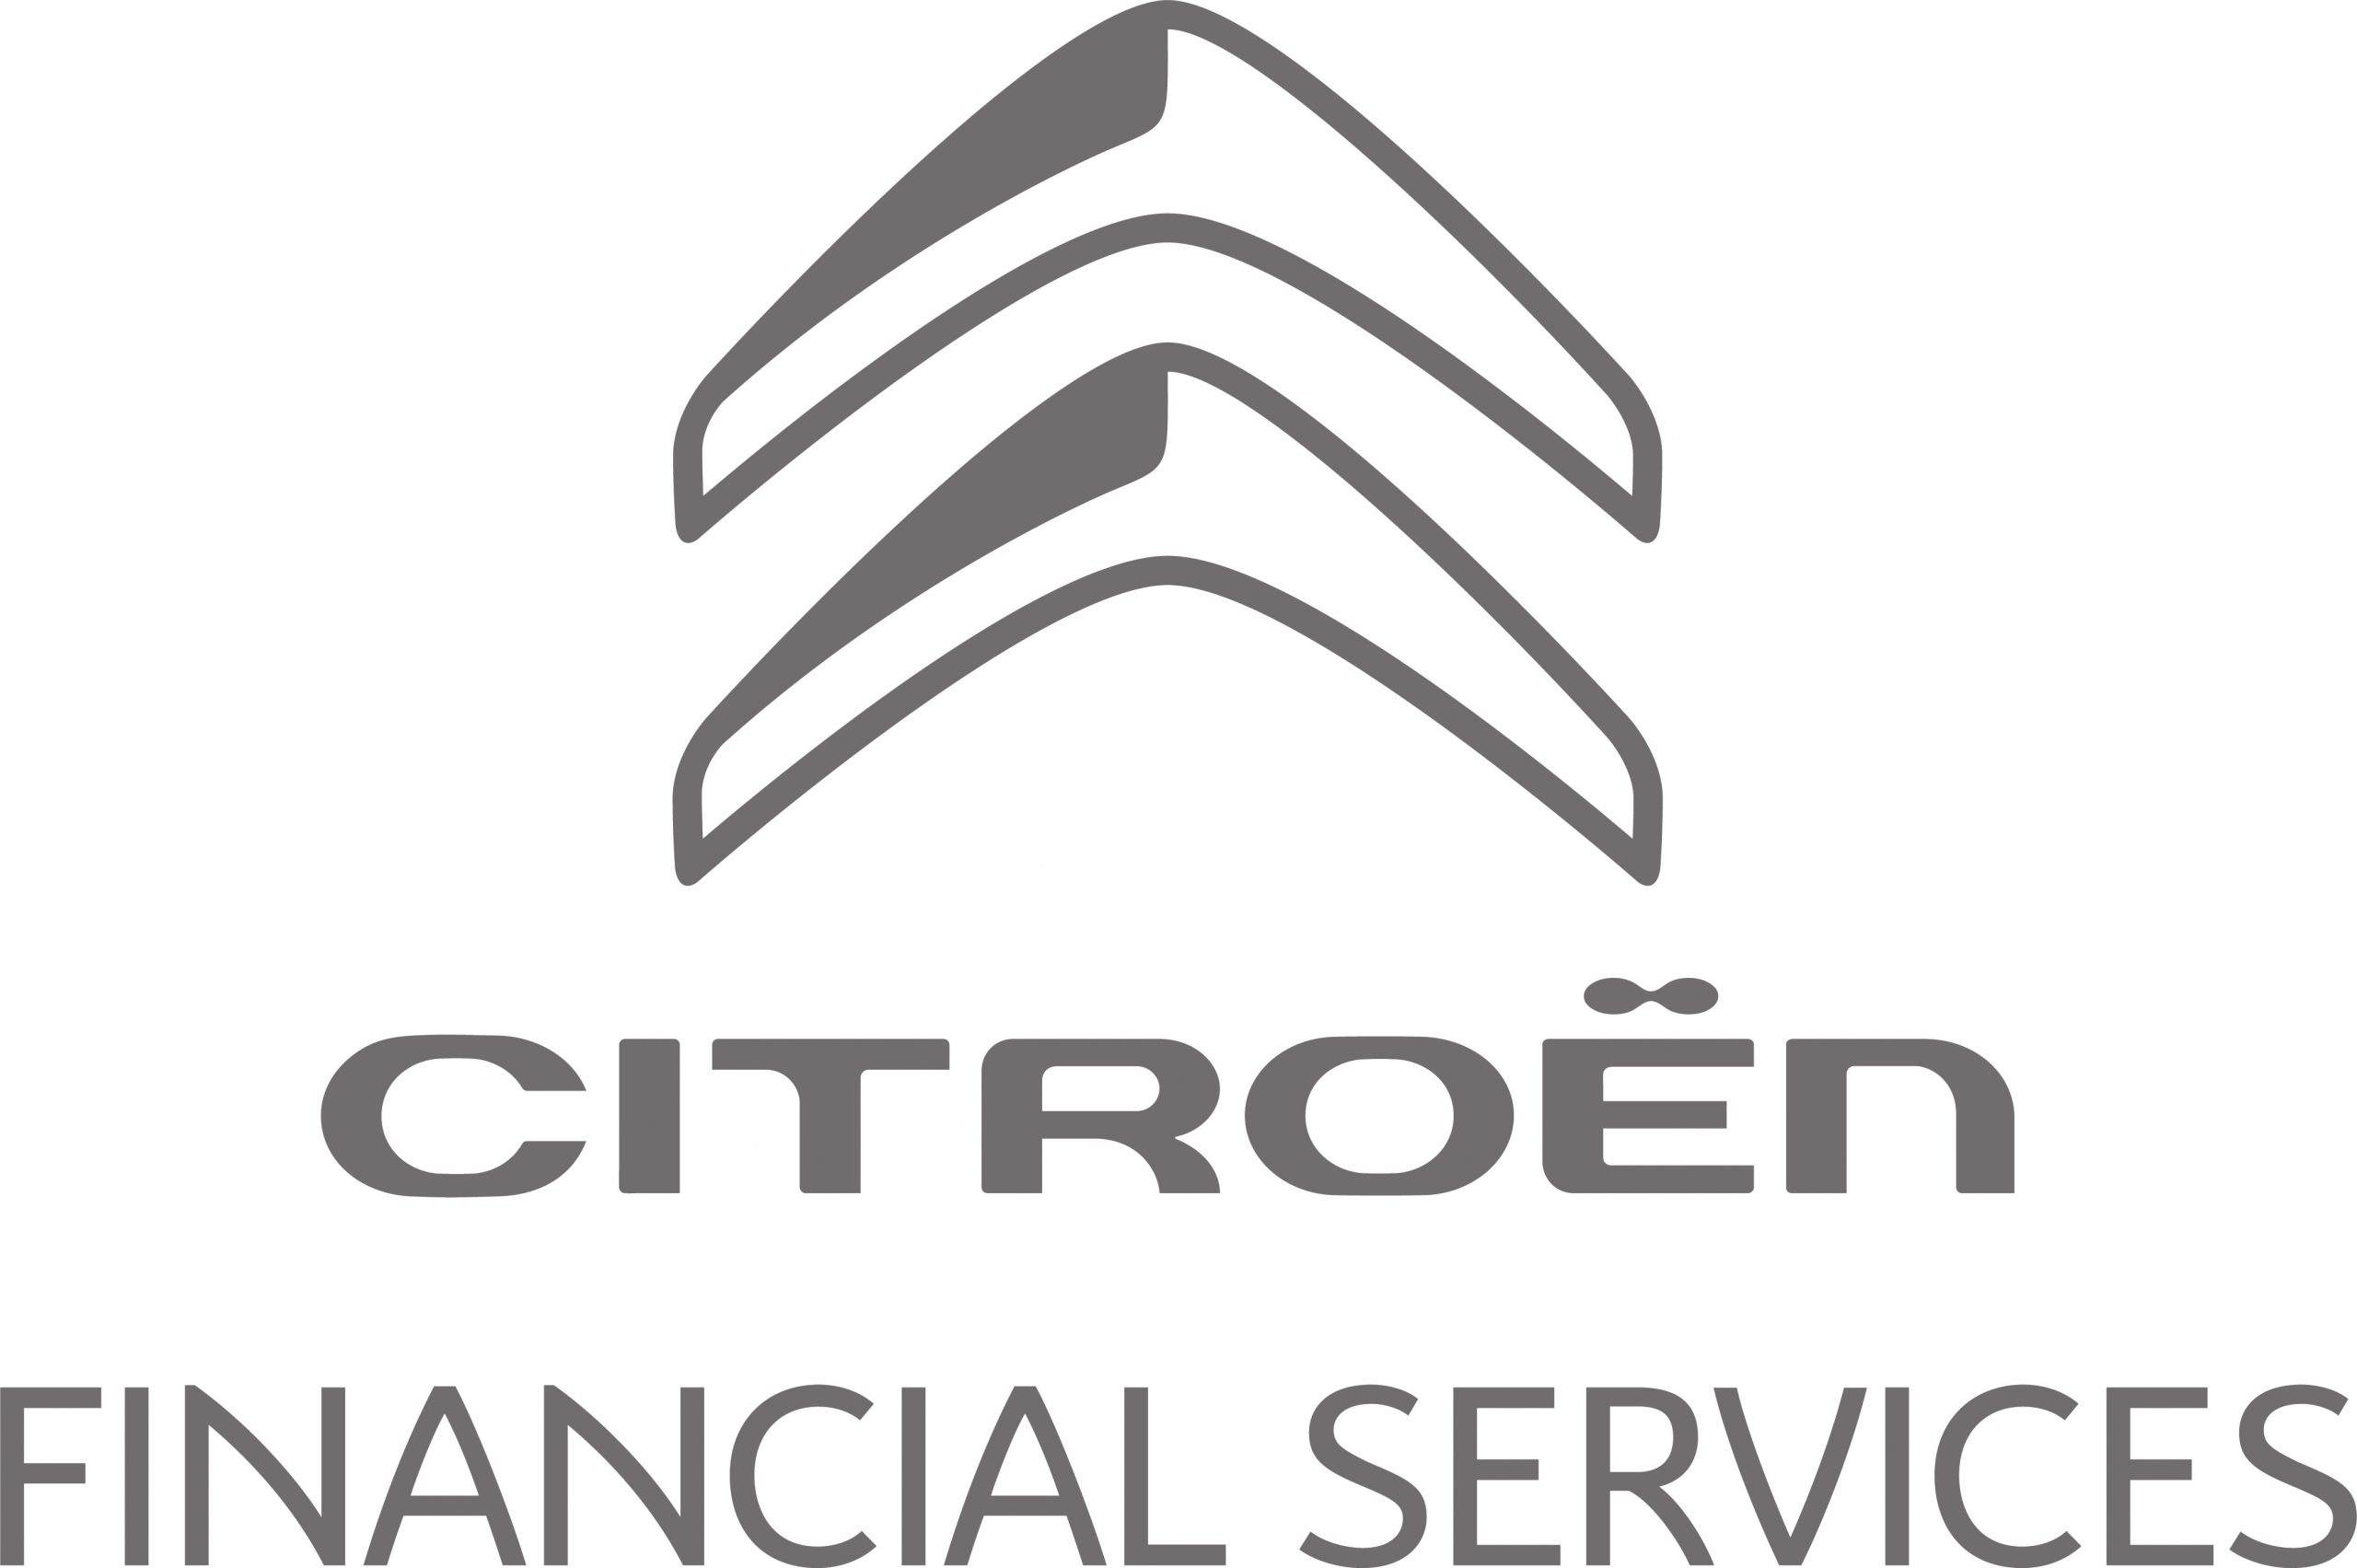 Citroen Financial Services logo.